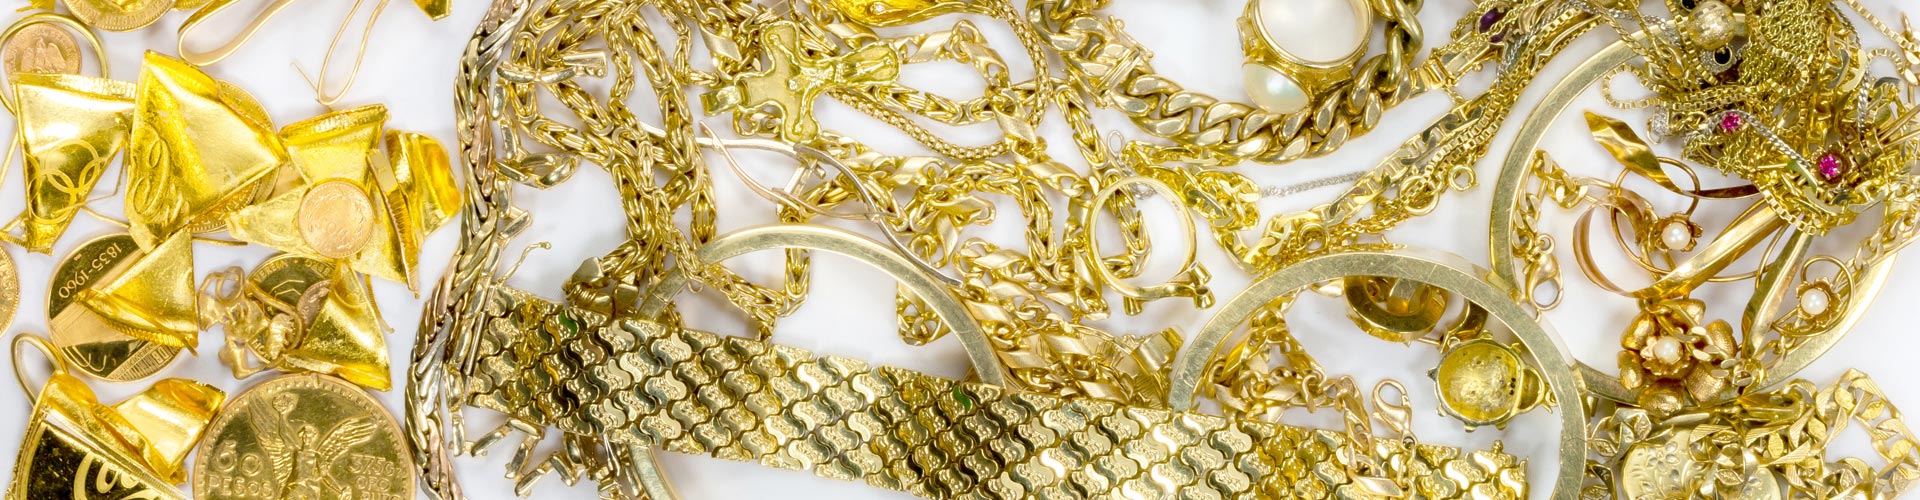 Verschiedener Goldschmuck wie Goldketten, Goldarmbänder und Ringe aus Gold mit Edelsteinen